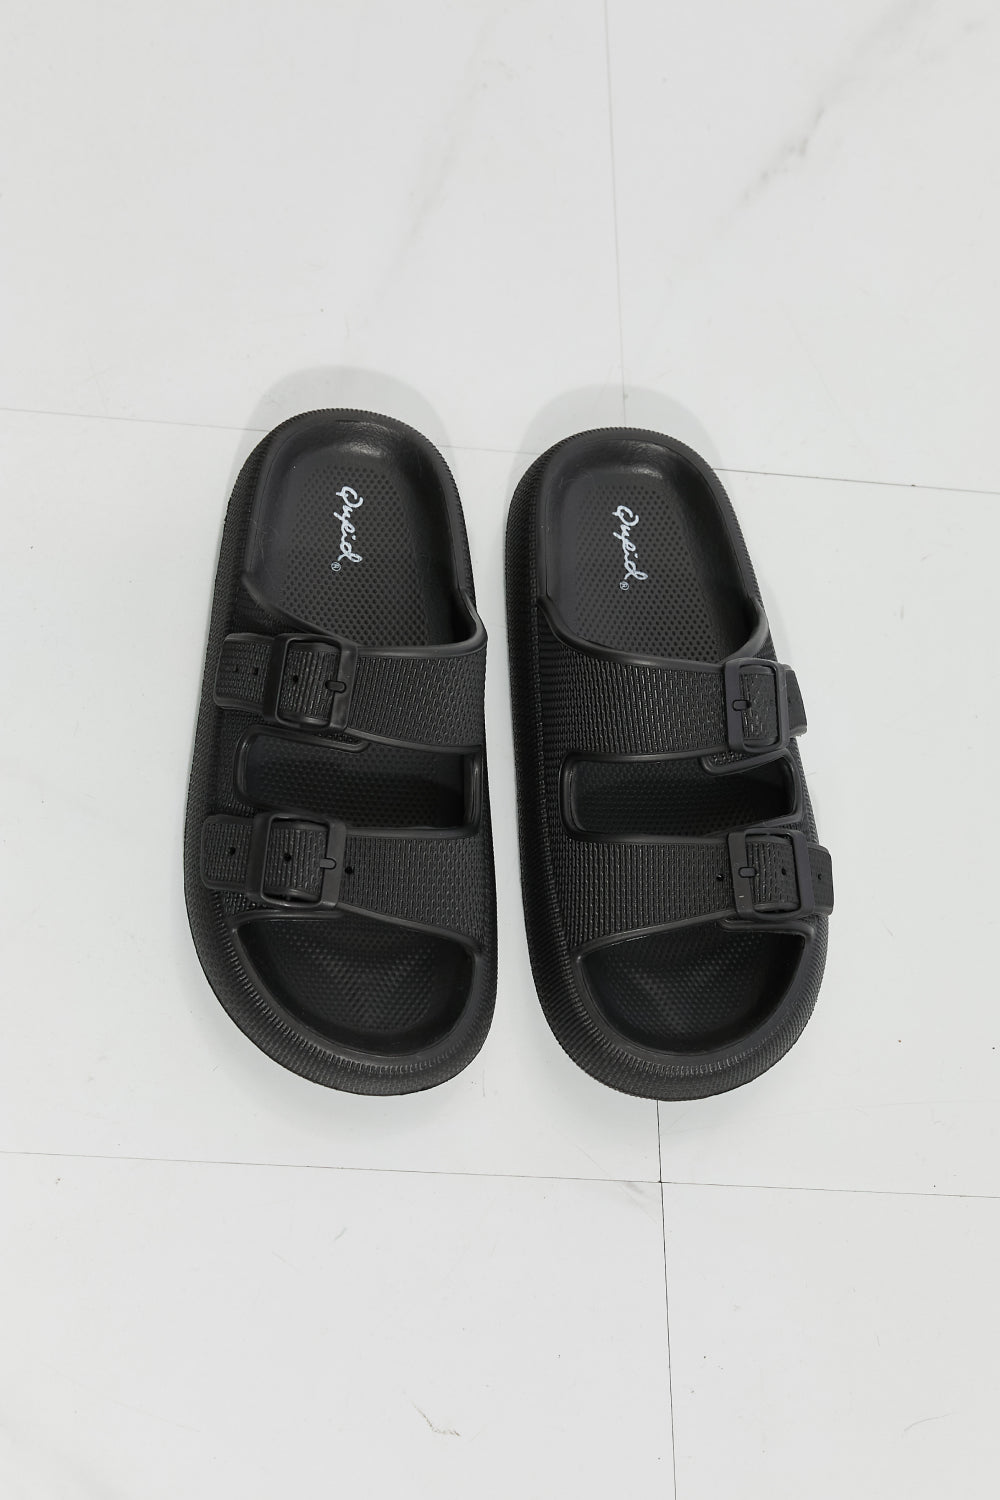 Qupid Comfy Casual Rubber Slide Sandal in Black